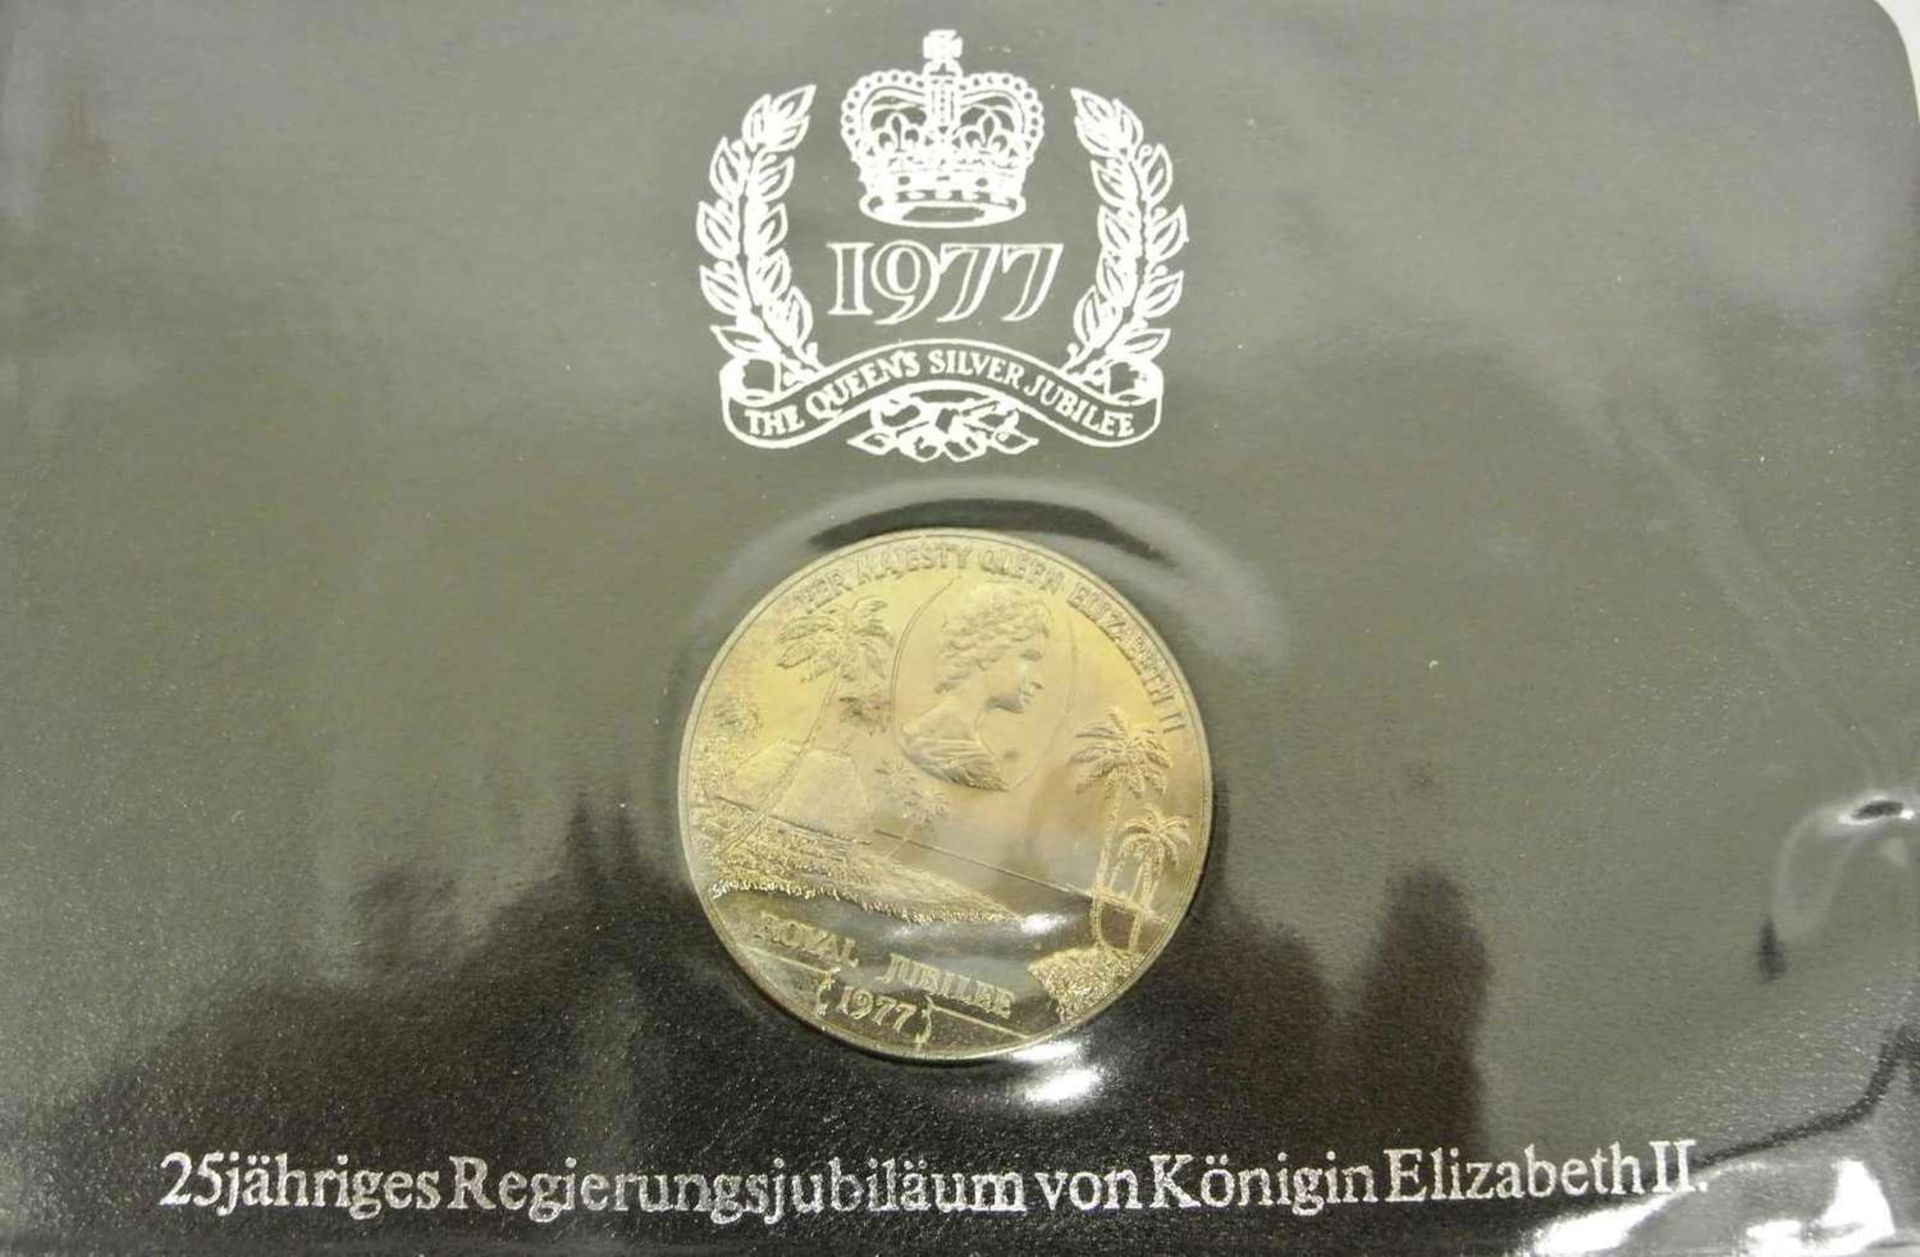 Lot Münzen 1977, 25jähriges Regierungsjubiläum von Königin Elisabeth II., dabei 1x1 Dollar Kanada - Bild 3 aus 5